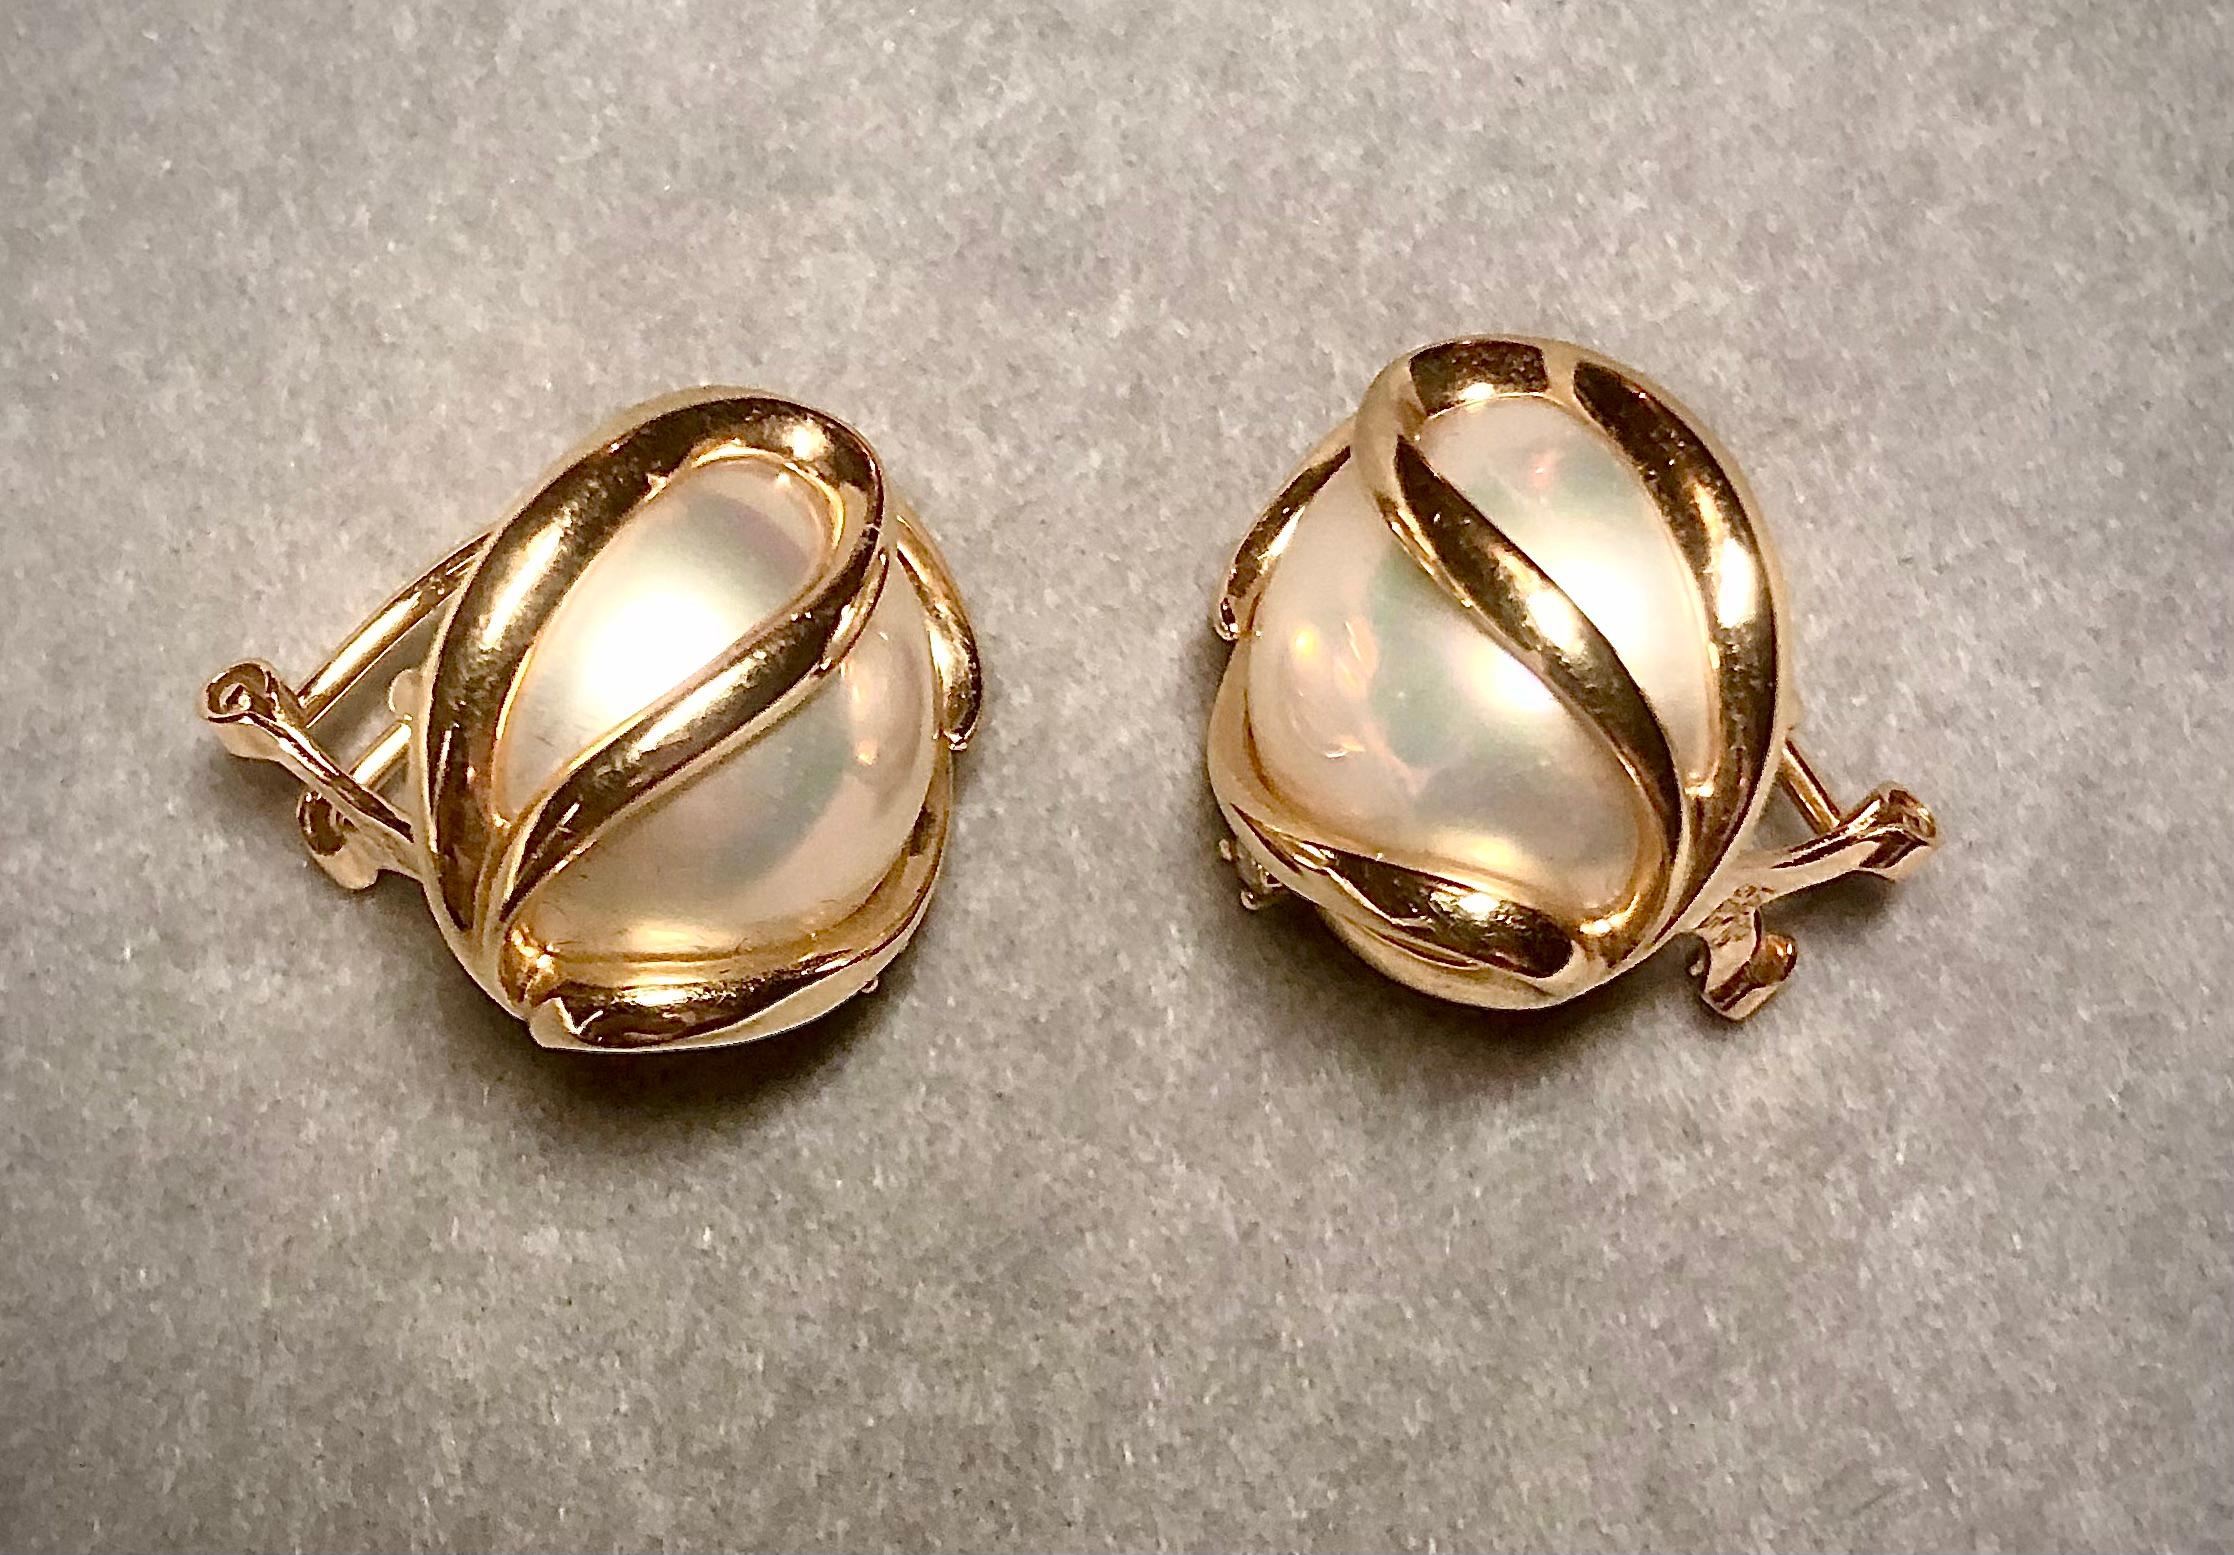 Dezentes, aber sehr raffiniertes Design für klassische Mabe-Zuchtperlen-Ohrringe. Die Perlen sind in einer eleganten, wirbelnden Fassung aus 14-karätigem Gelbgold eingefasst, die mit einem kleinen weißen Brillanten akzentuiert ist. Sie werden mit